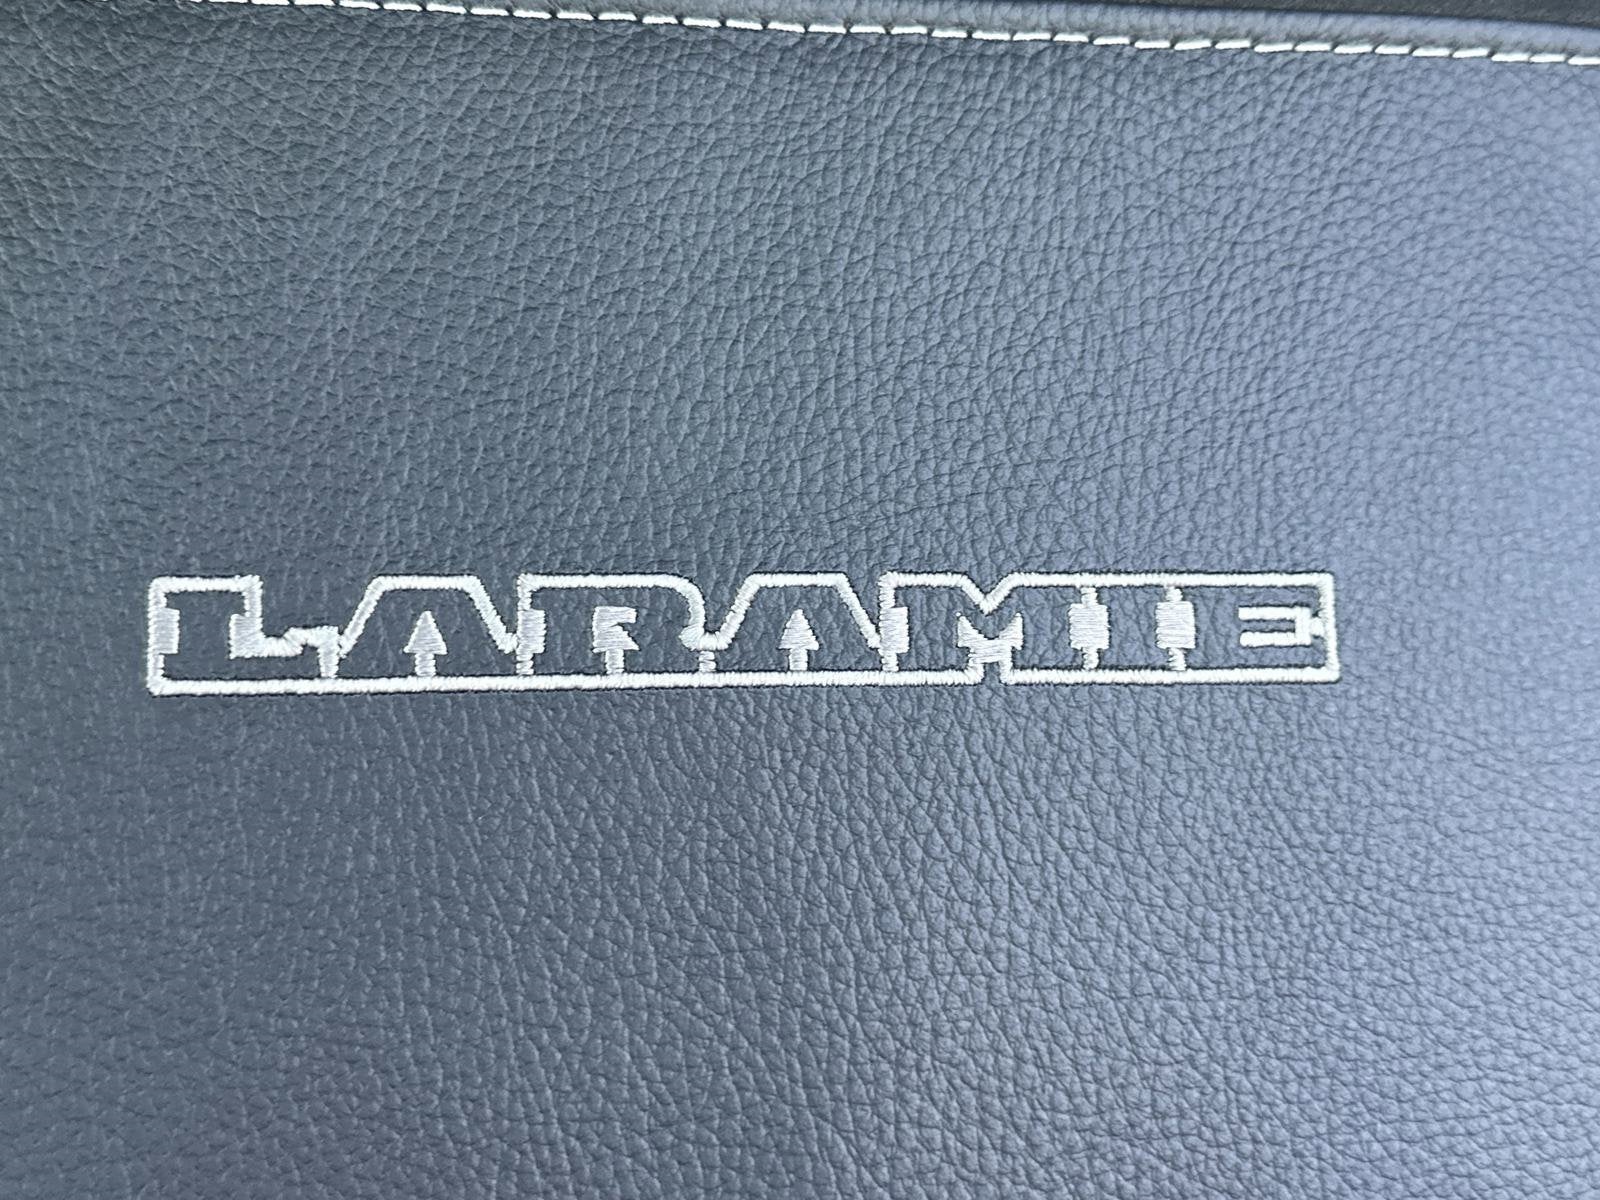 2024 RAM 2500 Laramie Crew Cab